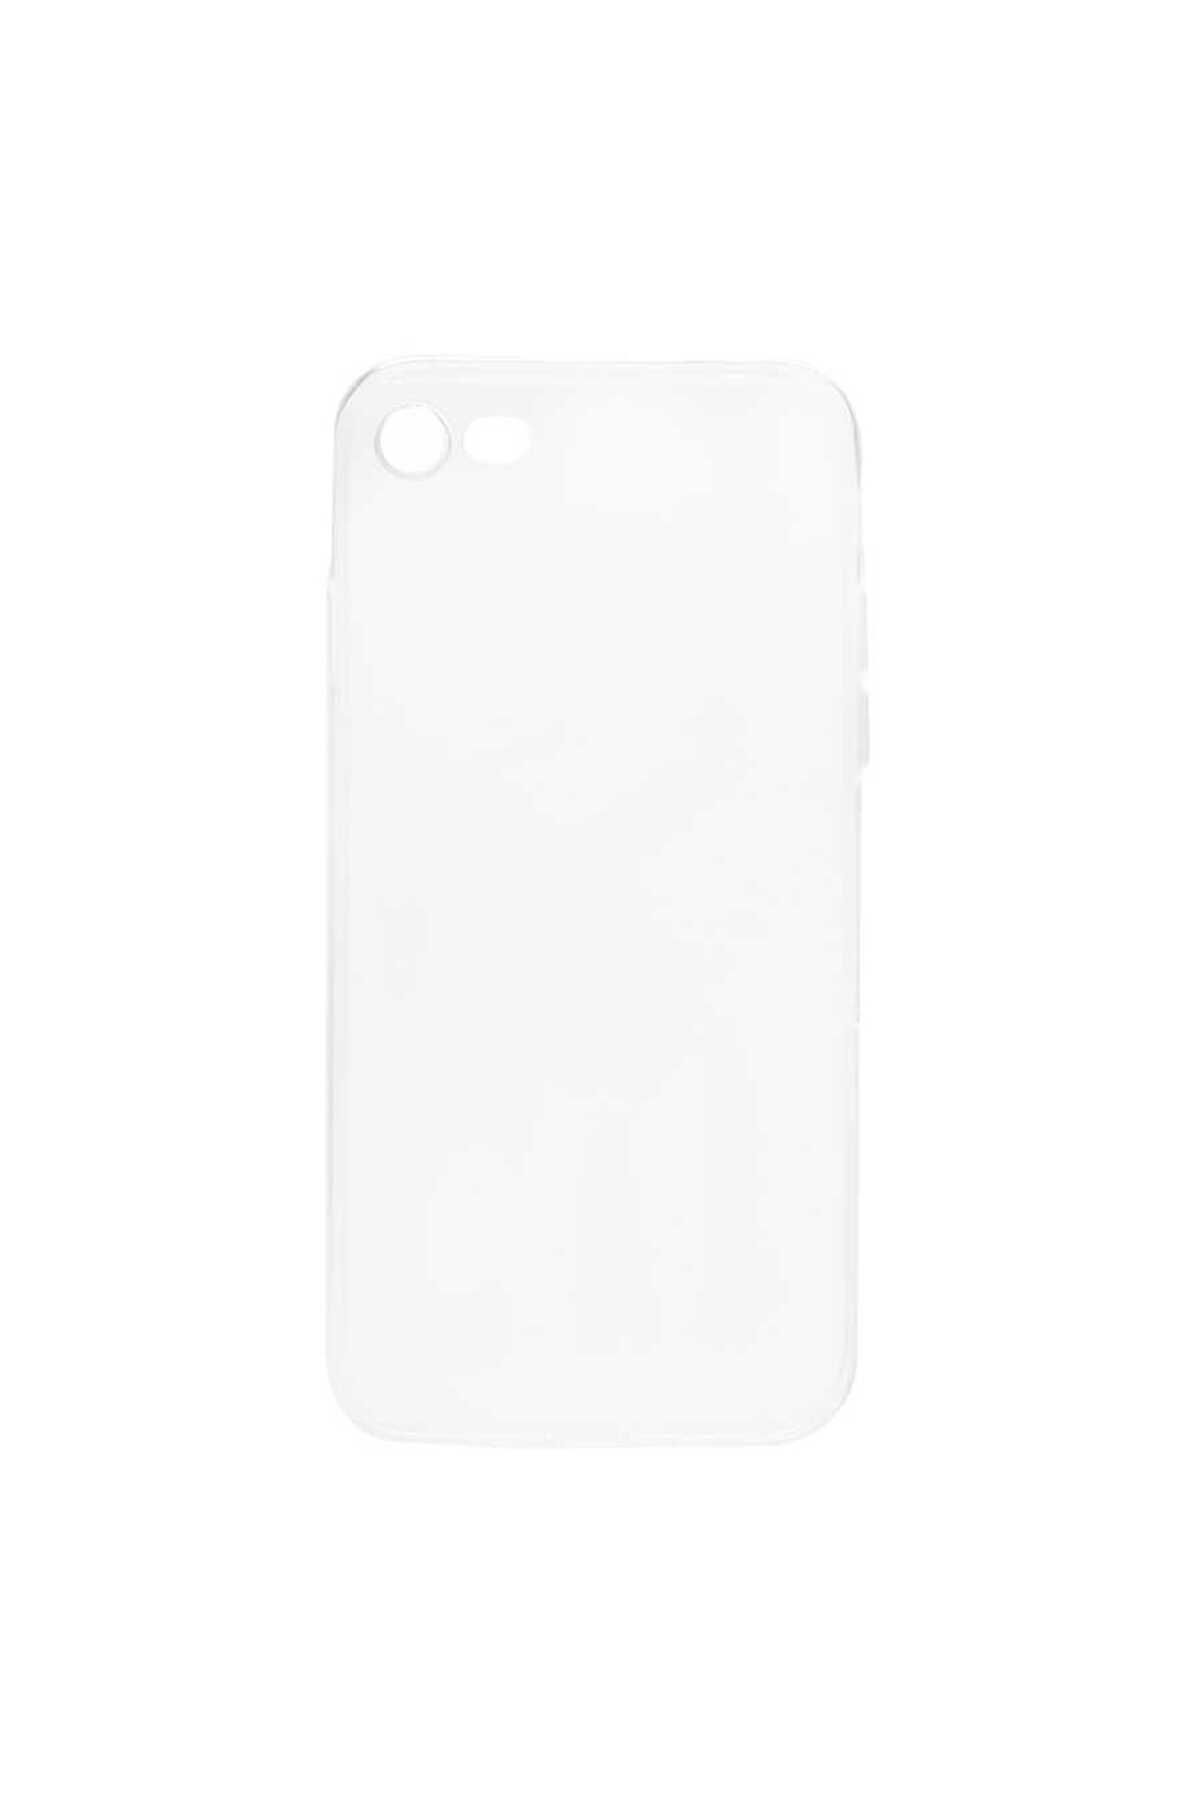 GRABONO Apple iPhone 7 Uyumlu Dayanıklı ve Esnek Şeffaf Renksiz Kılıf